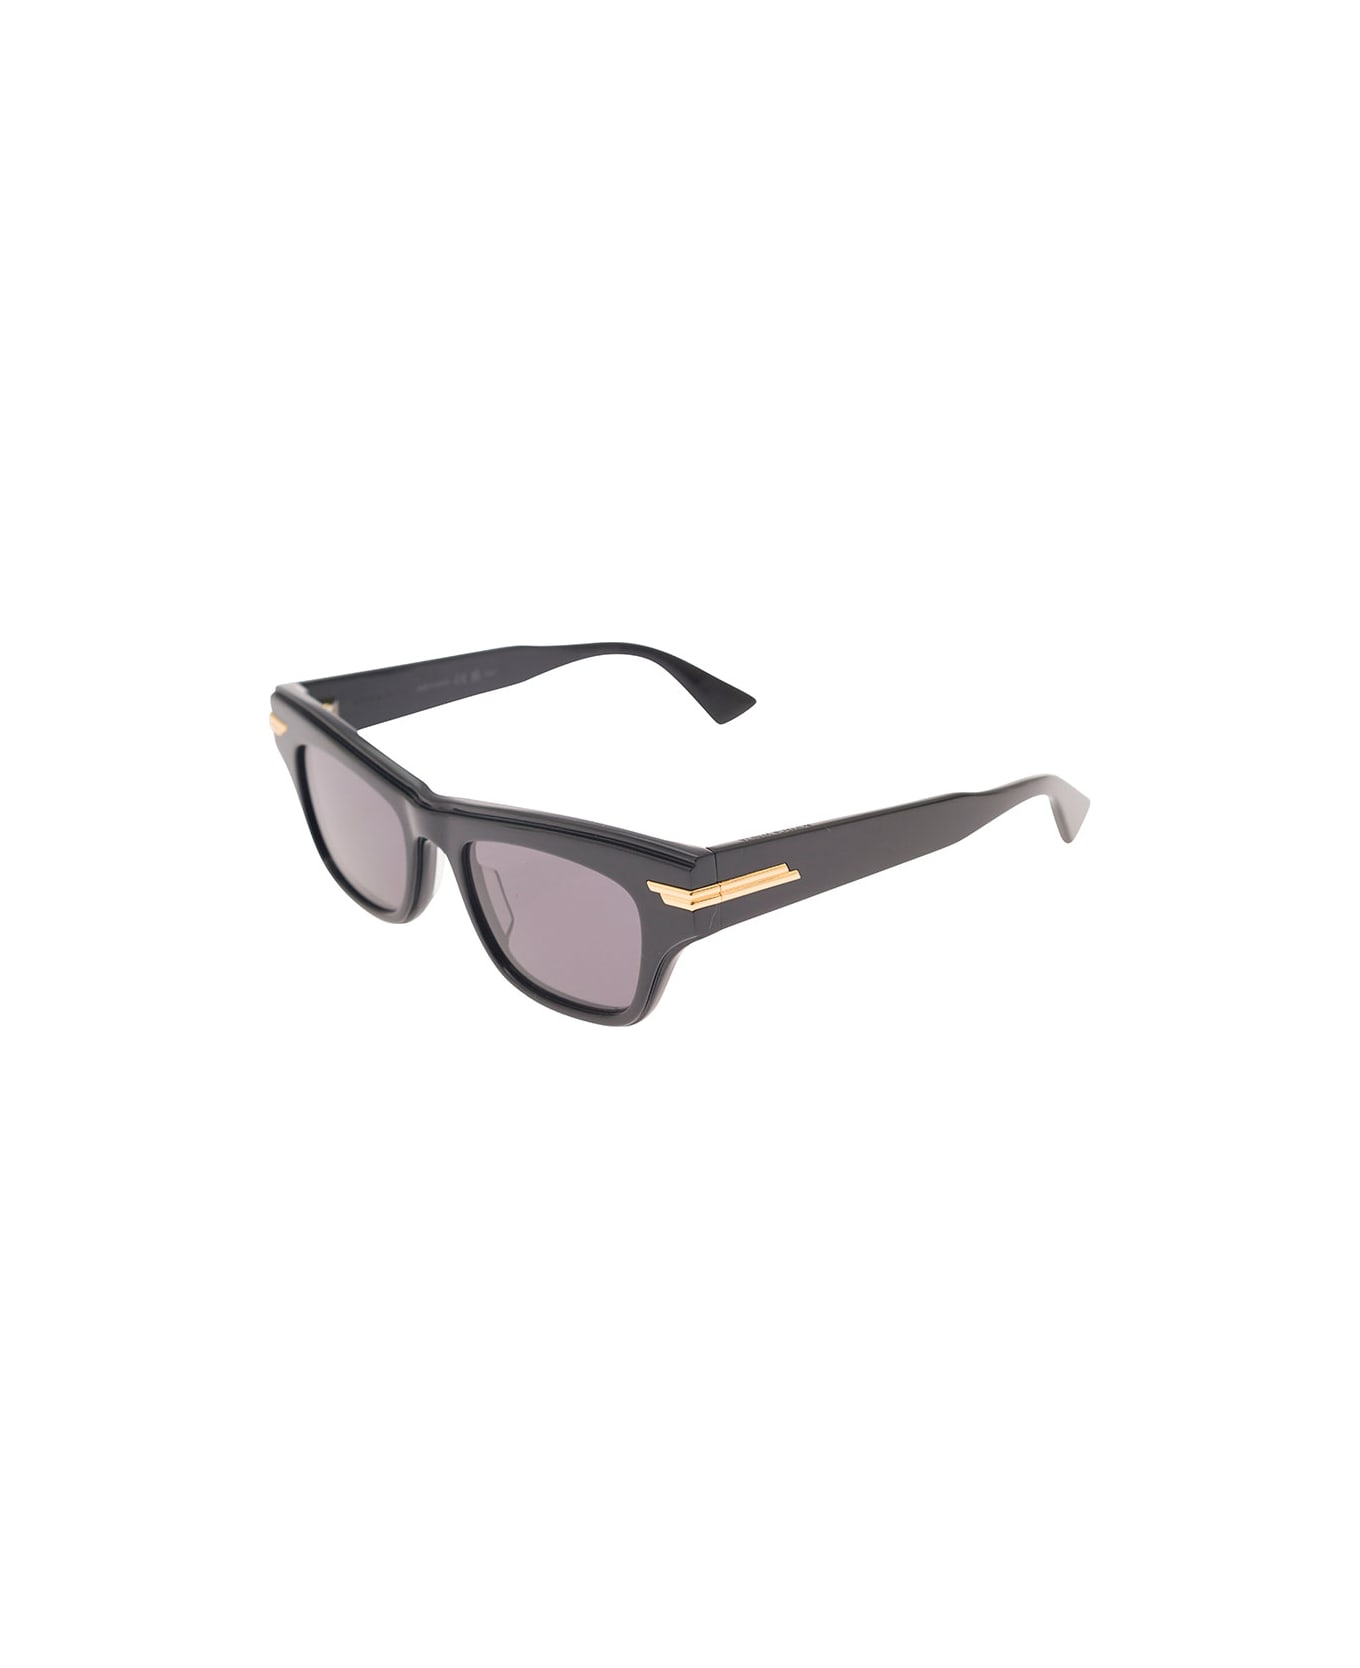 Bottega Veneta Rectangular Sunglasses With Golden Detail - Black サングラス